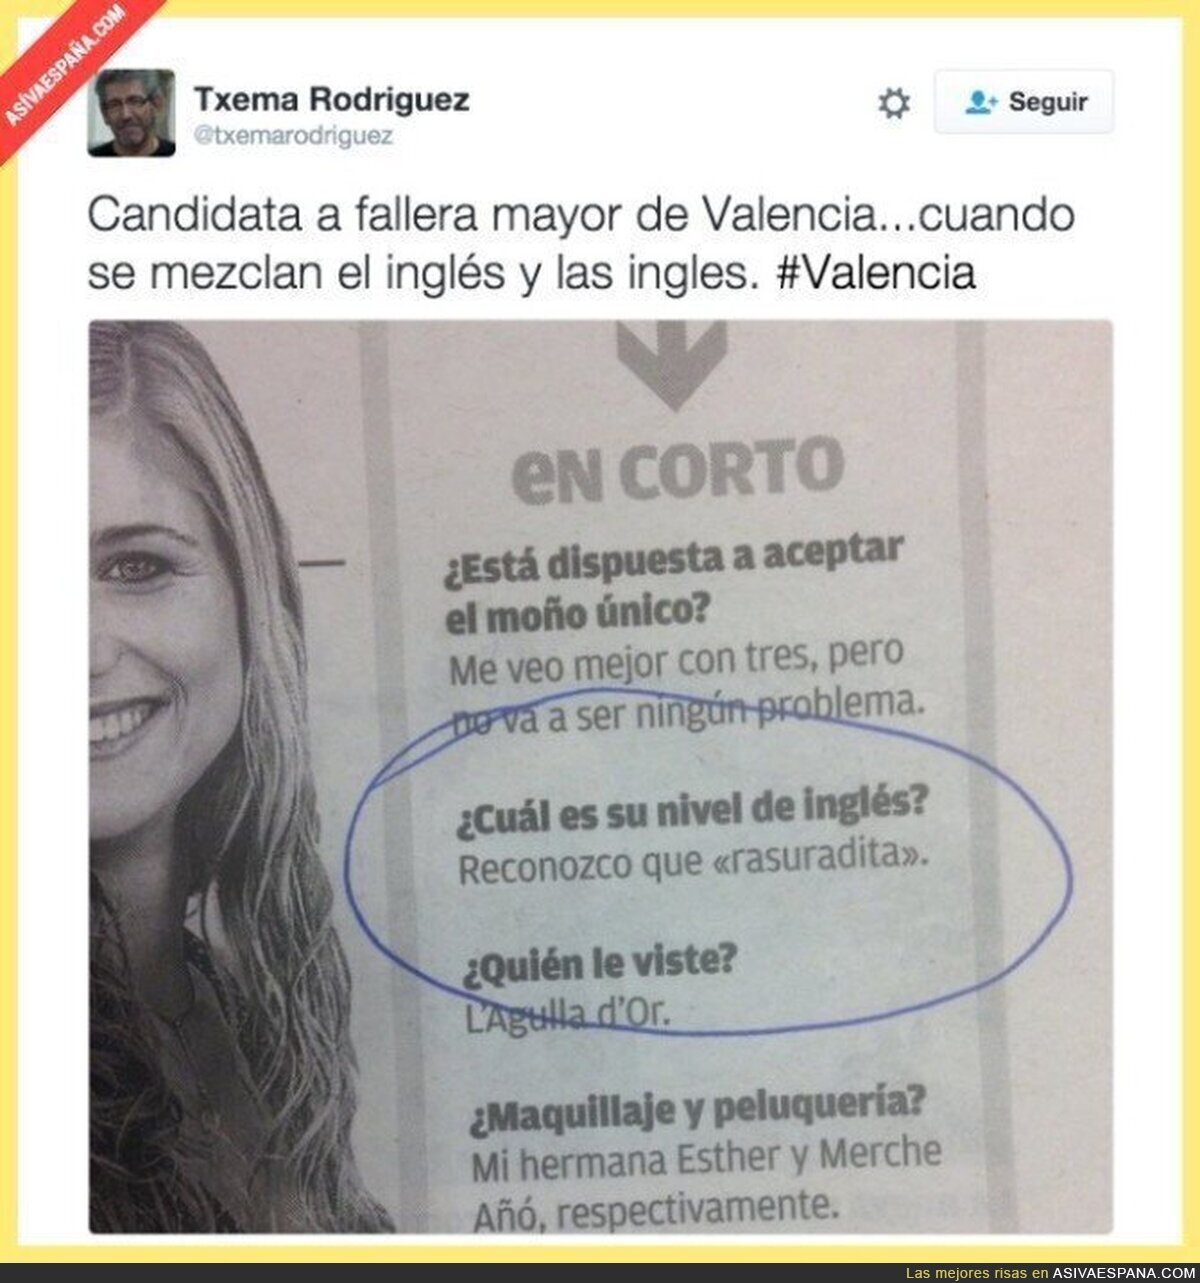 El problema con las tildes de la candidata a fallera mayor de Valencia